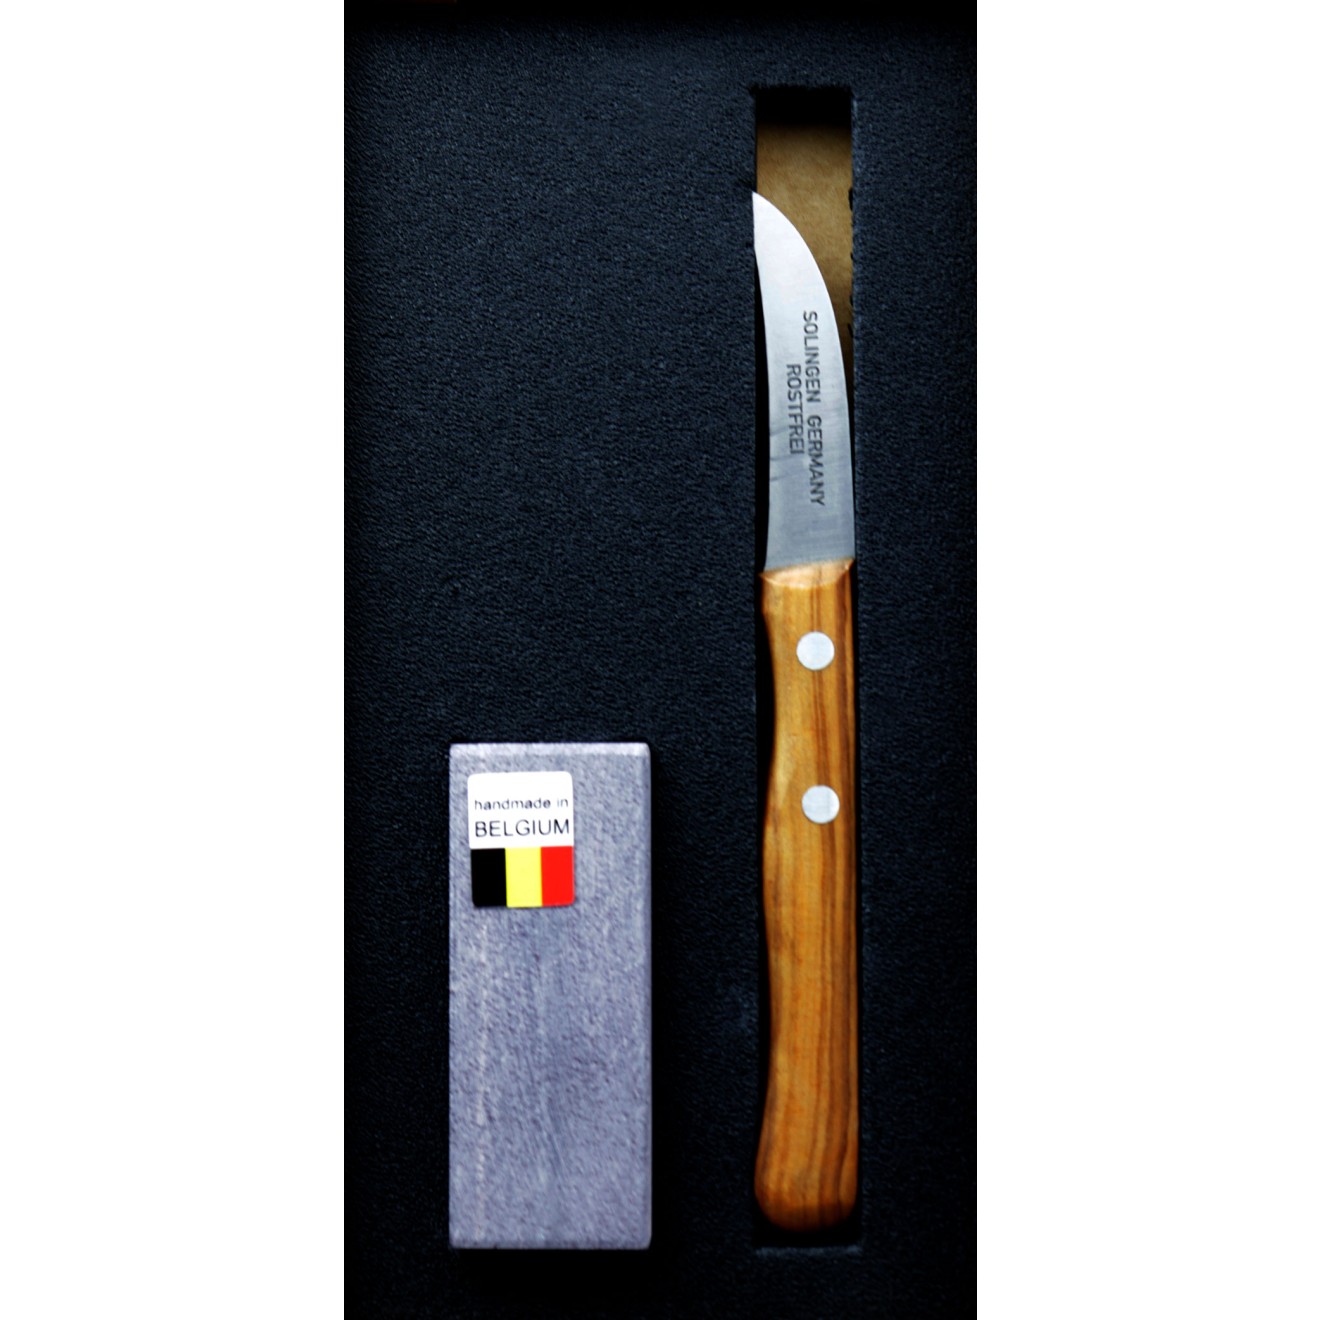 Blauer Belgischer Brocken und Solinger Messer im Display